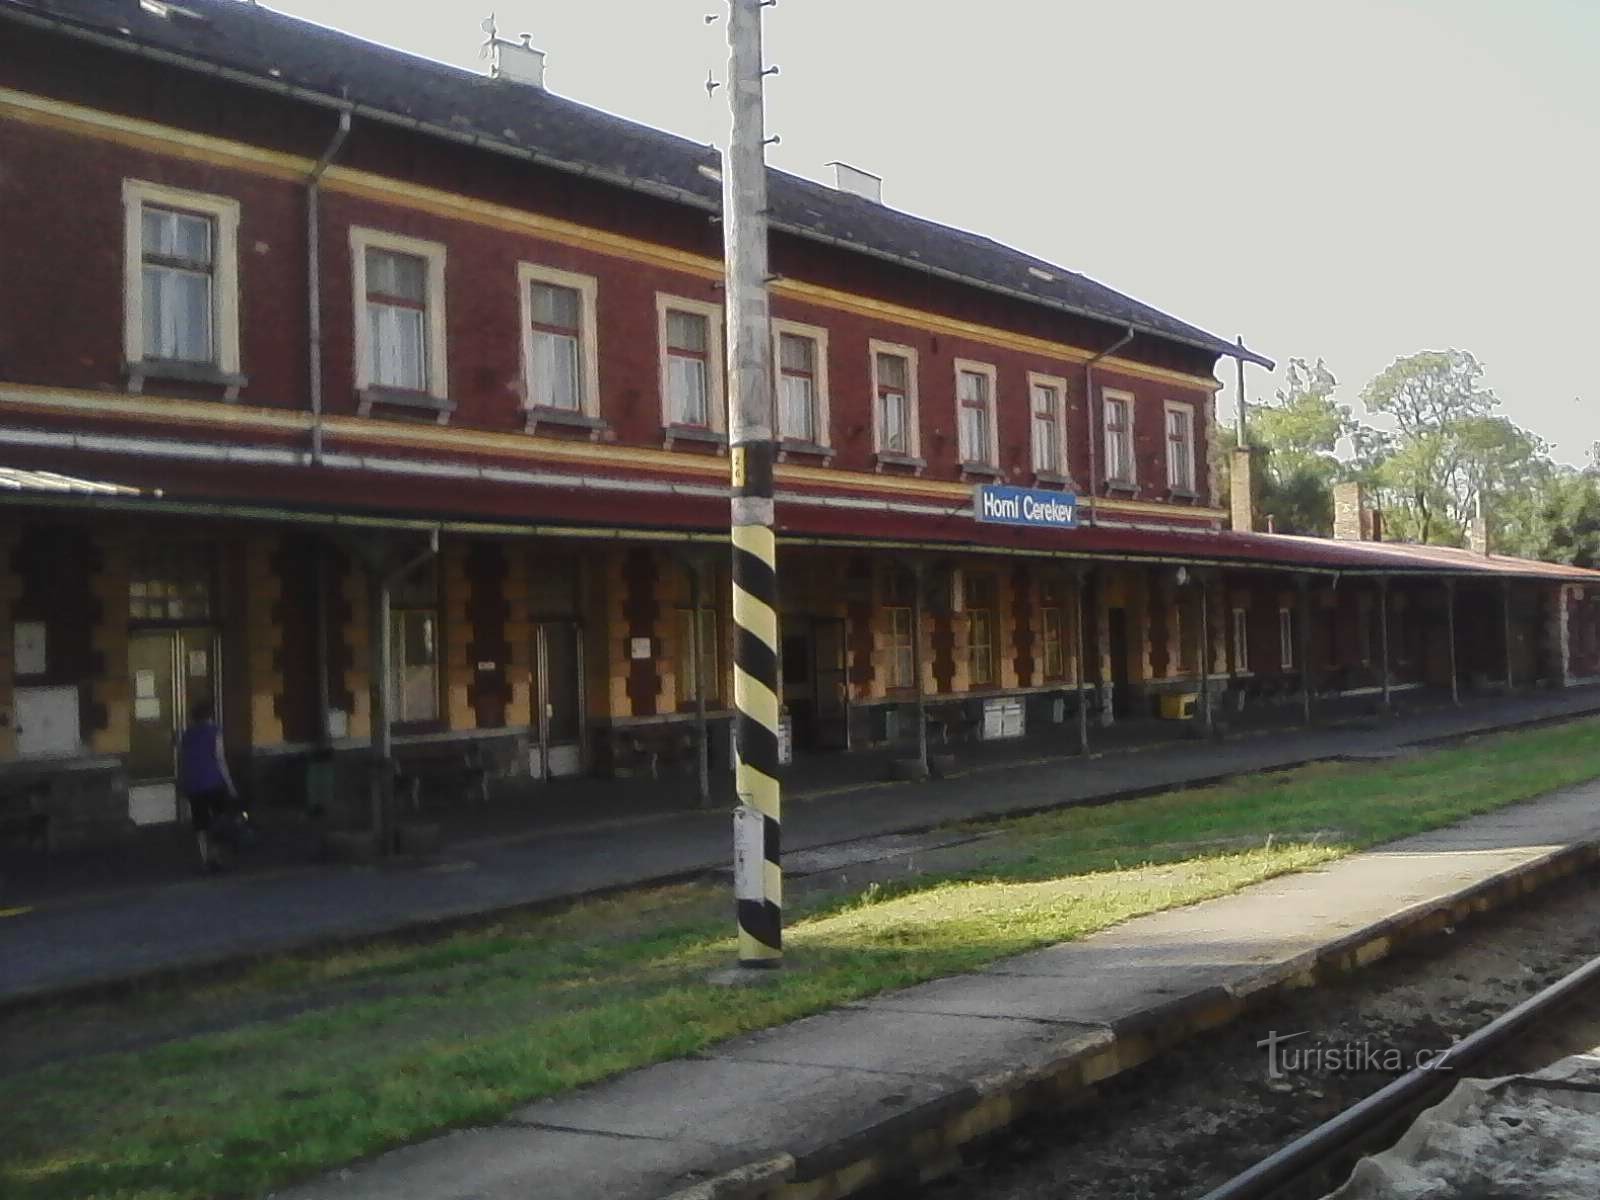 1. Ankunft am Bahnhof in Horní Cerekva, der die Strecke aus Tábor sperrt.